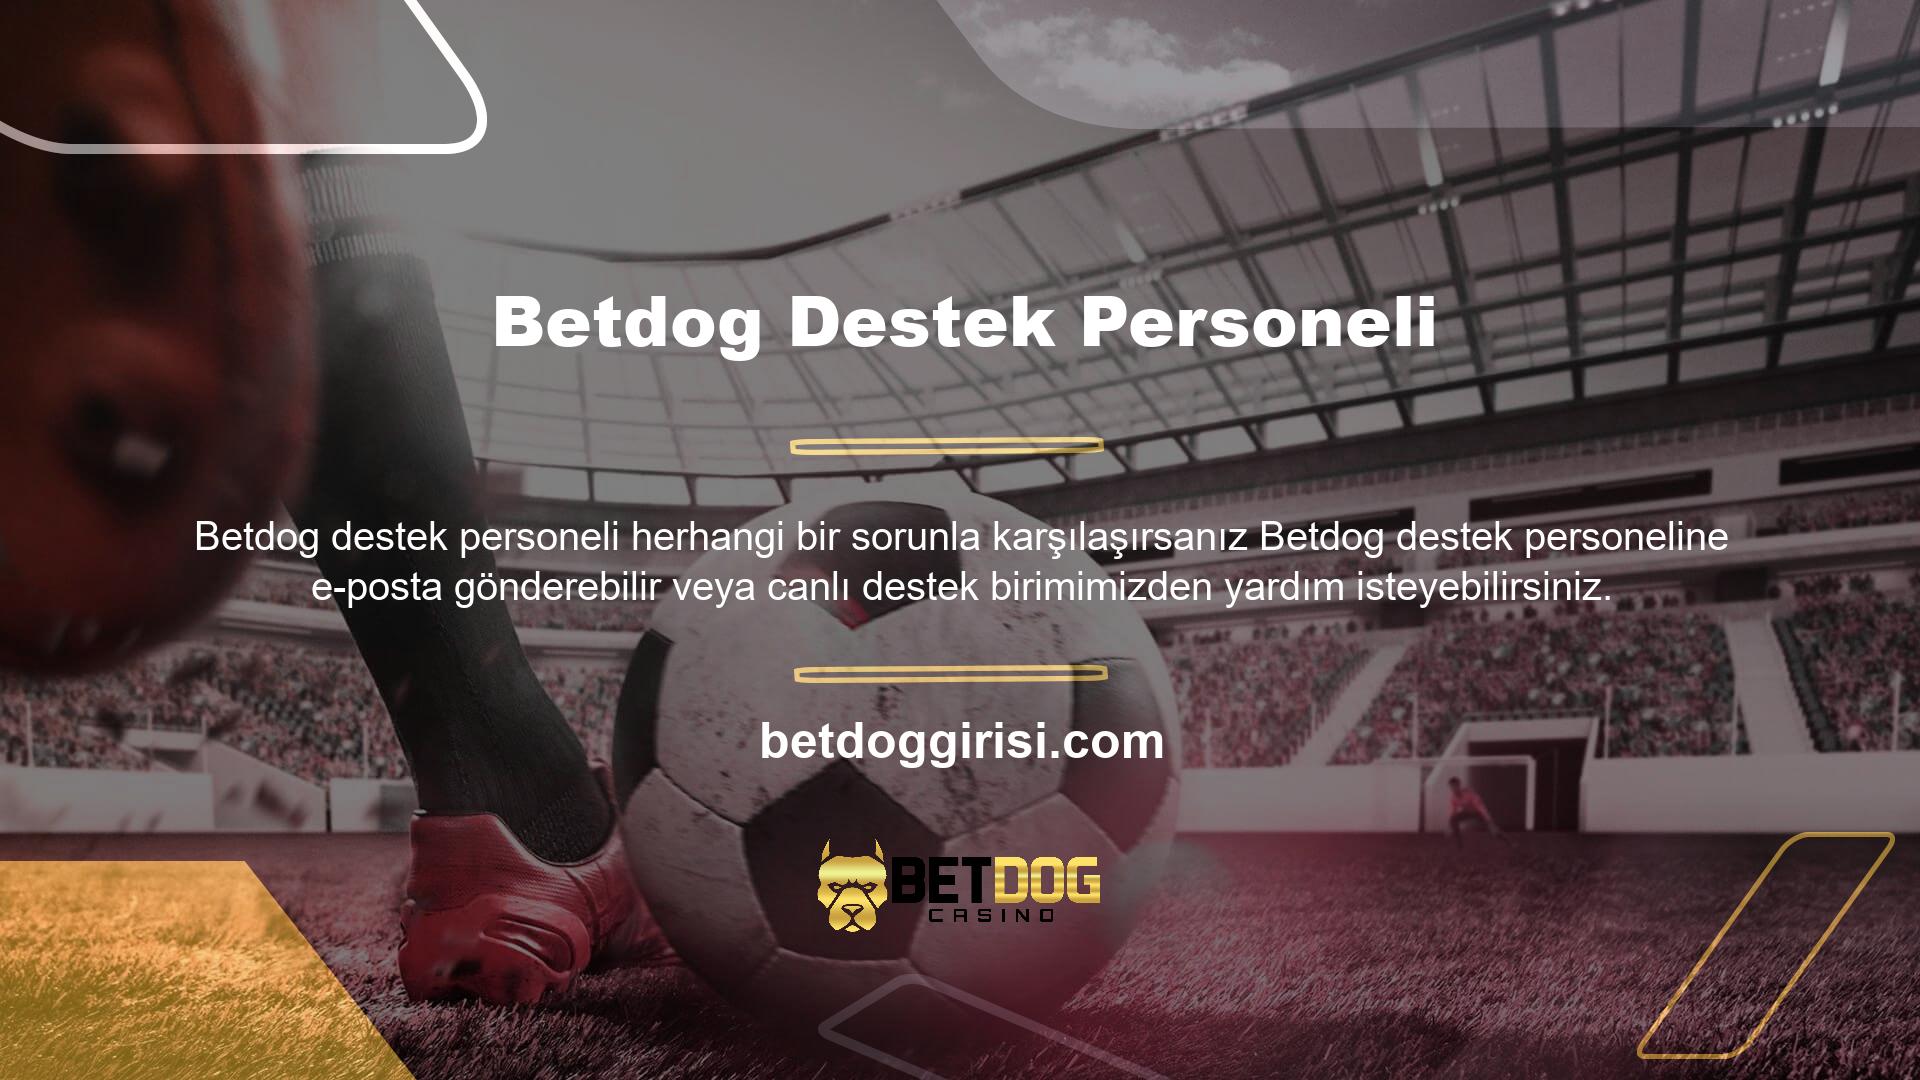 Betdog ilgili her şeyi takip etmek ve yeni promosyonlar hakkında bilgi edinmek için Betdog sosyal medya hesaplarını takip edin